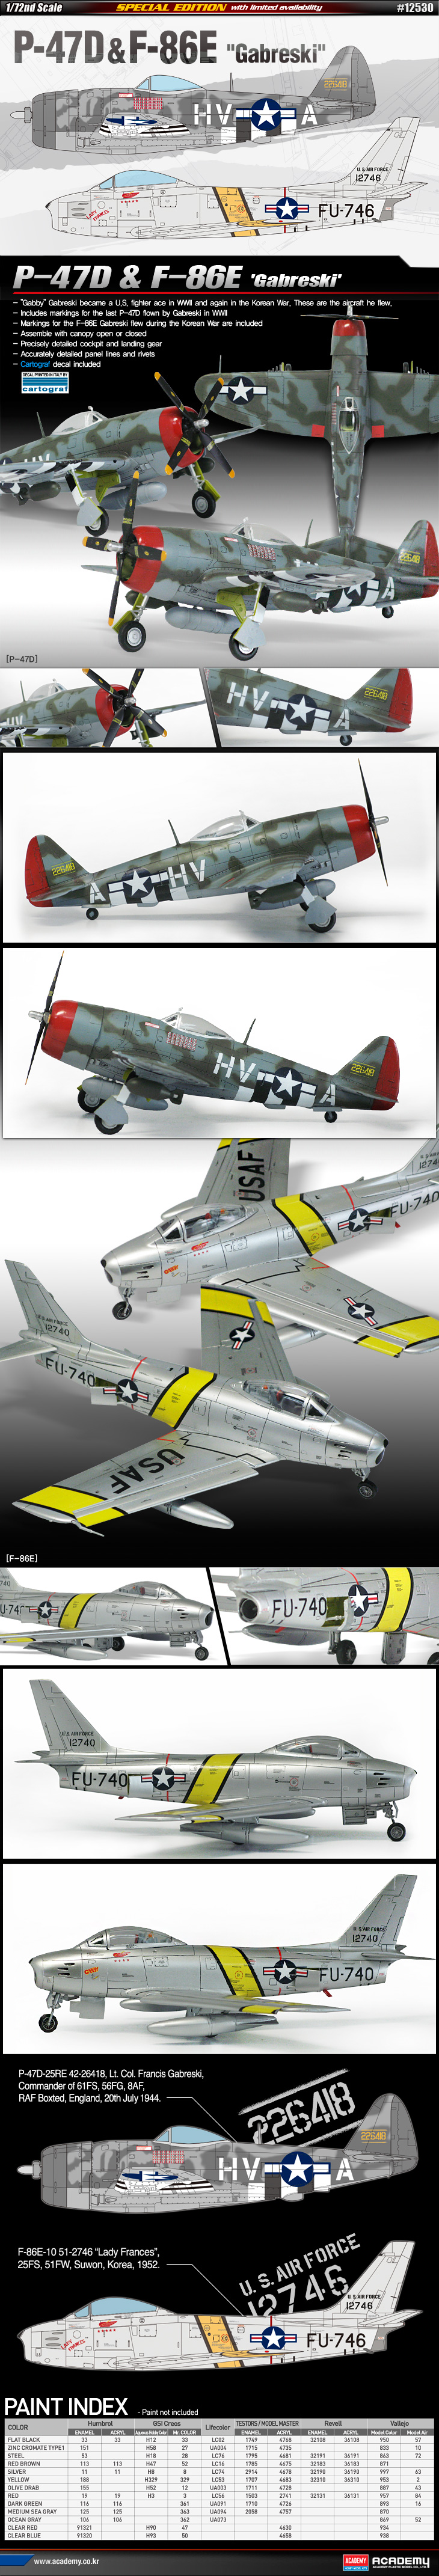 1/72 P-47D & F-86E "ガブレスキー" - ウインドウを閉じる